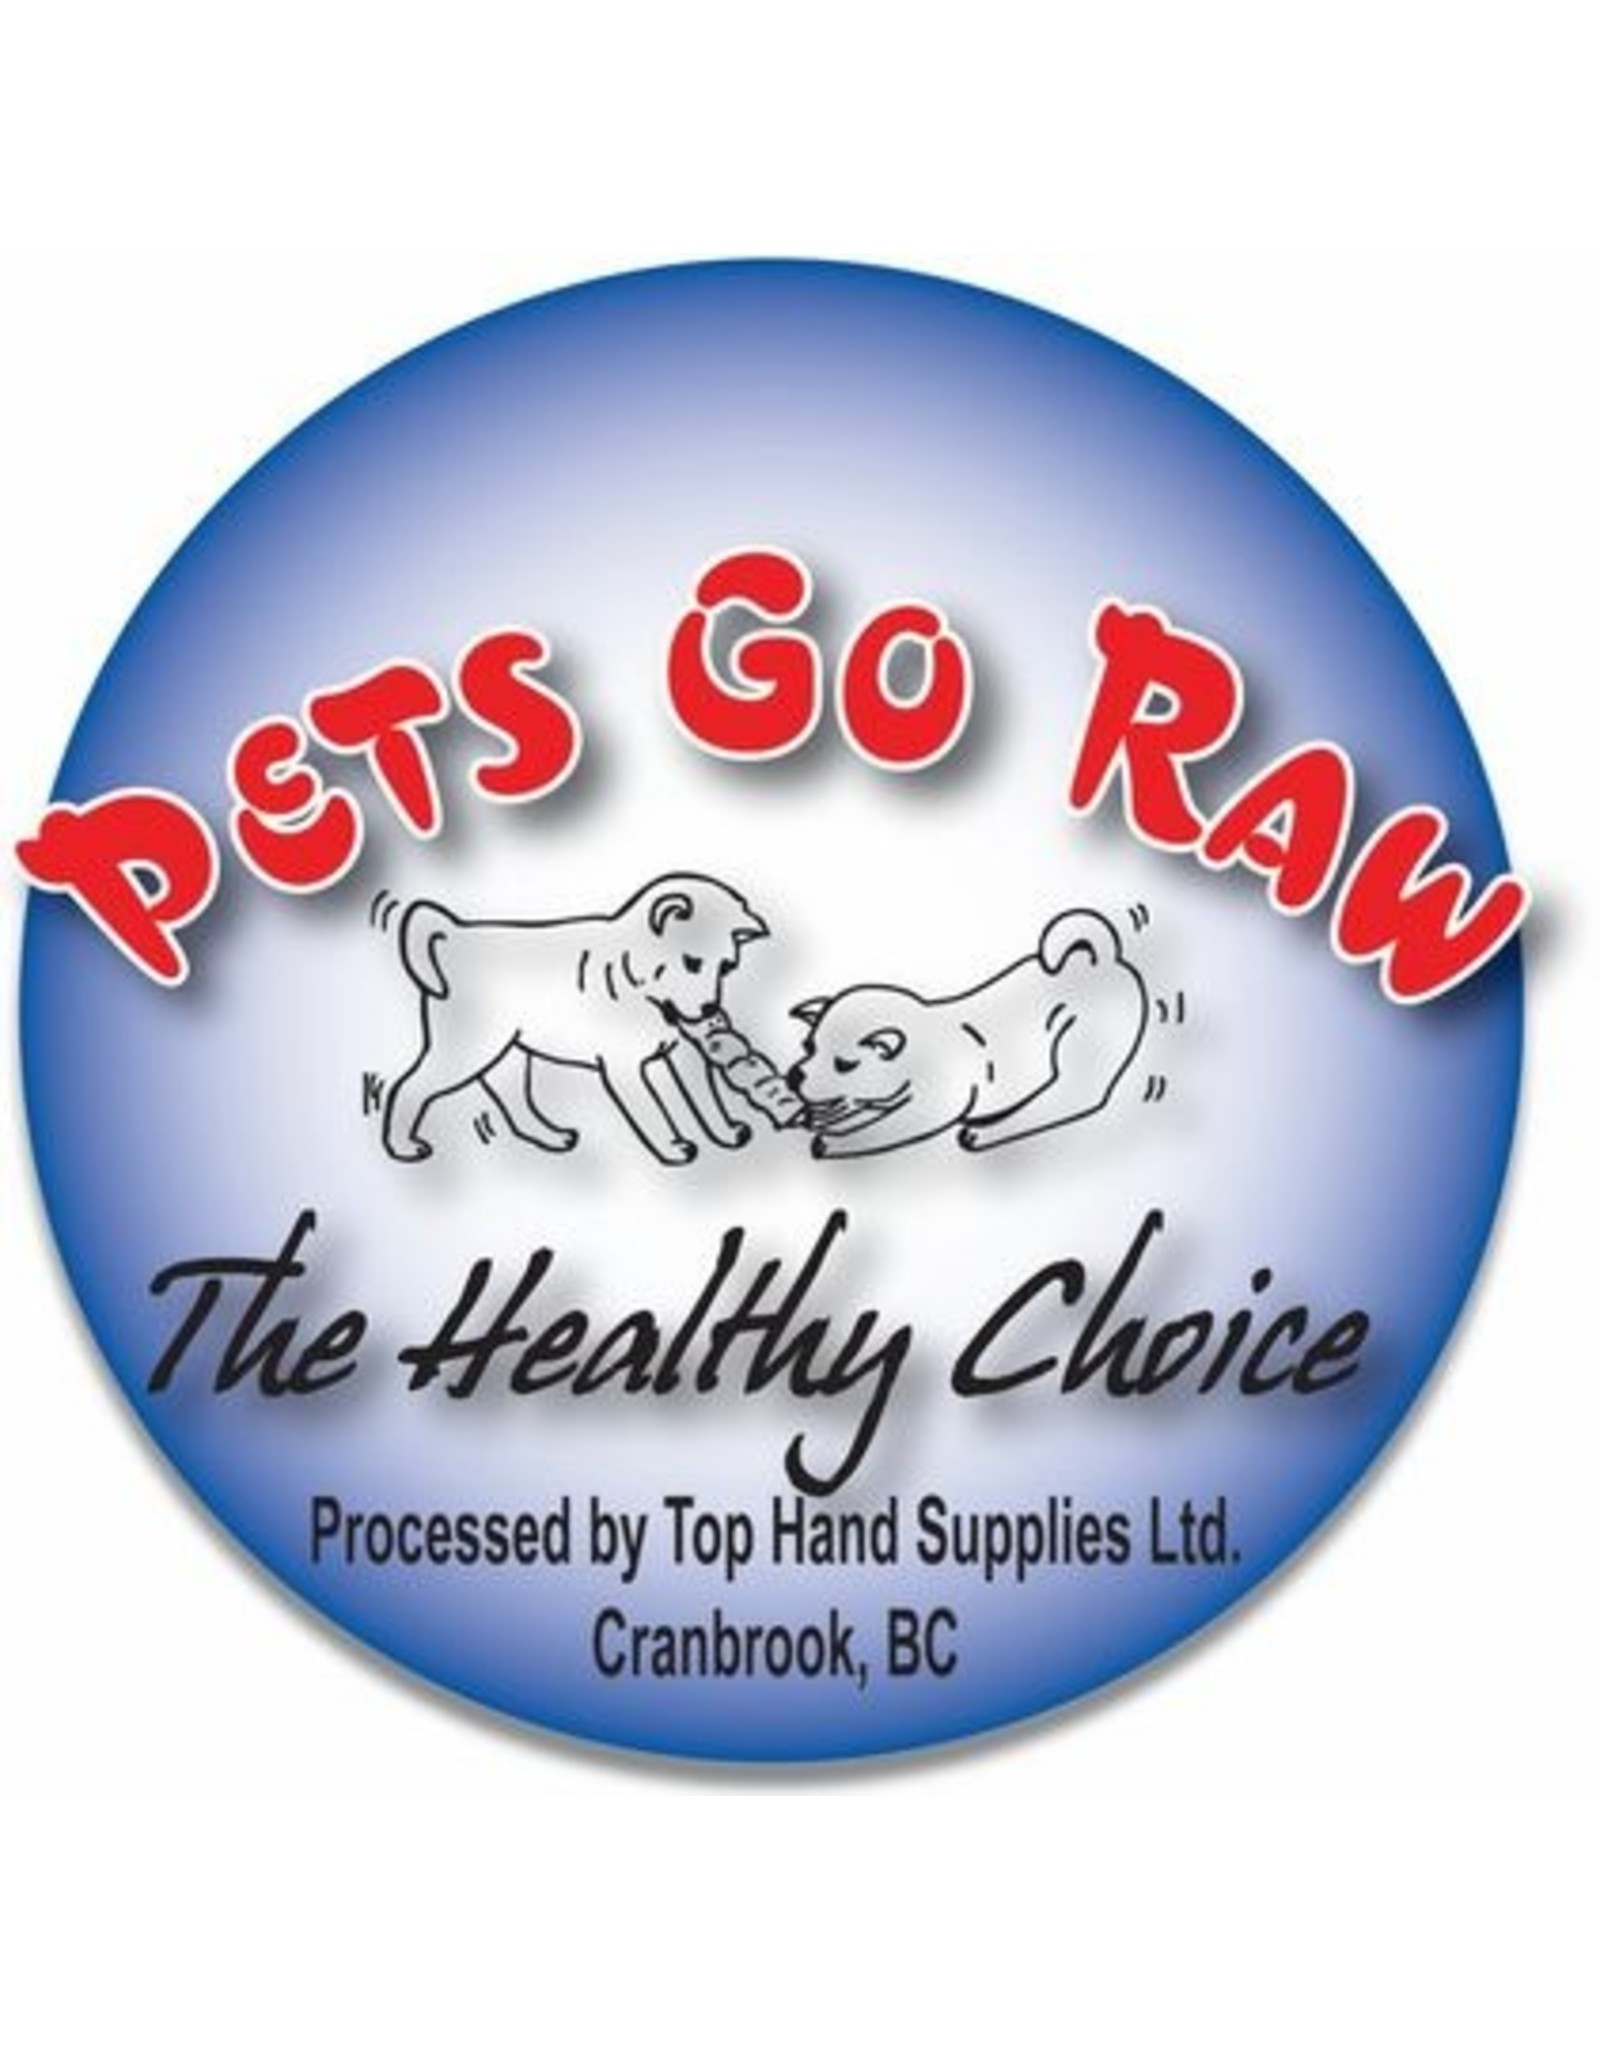 Pets Go Raw Salmon Full Meal 8 x 1/4lb Patties